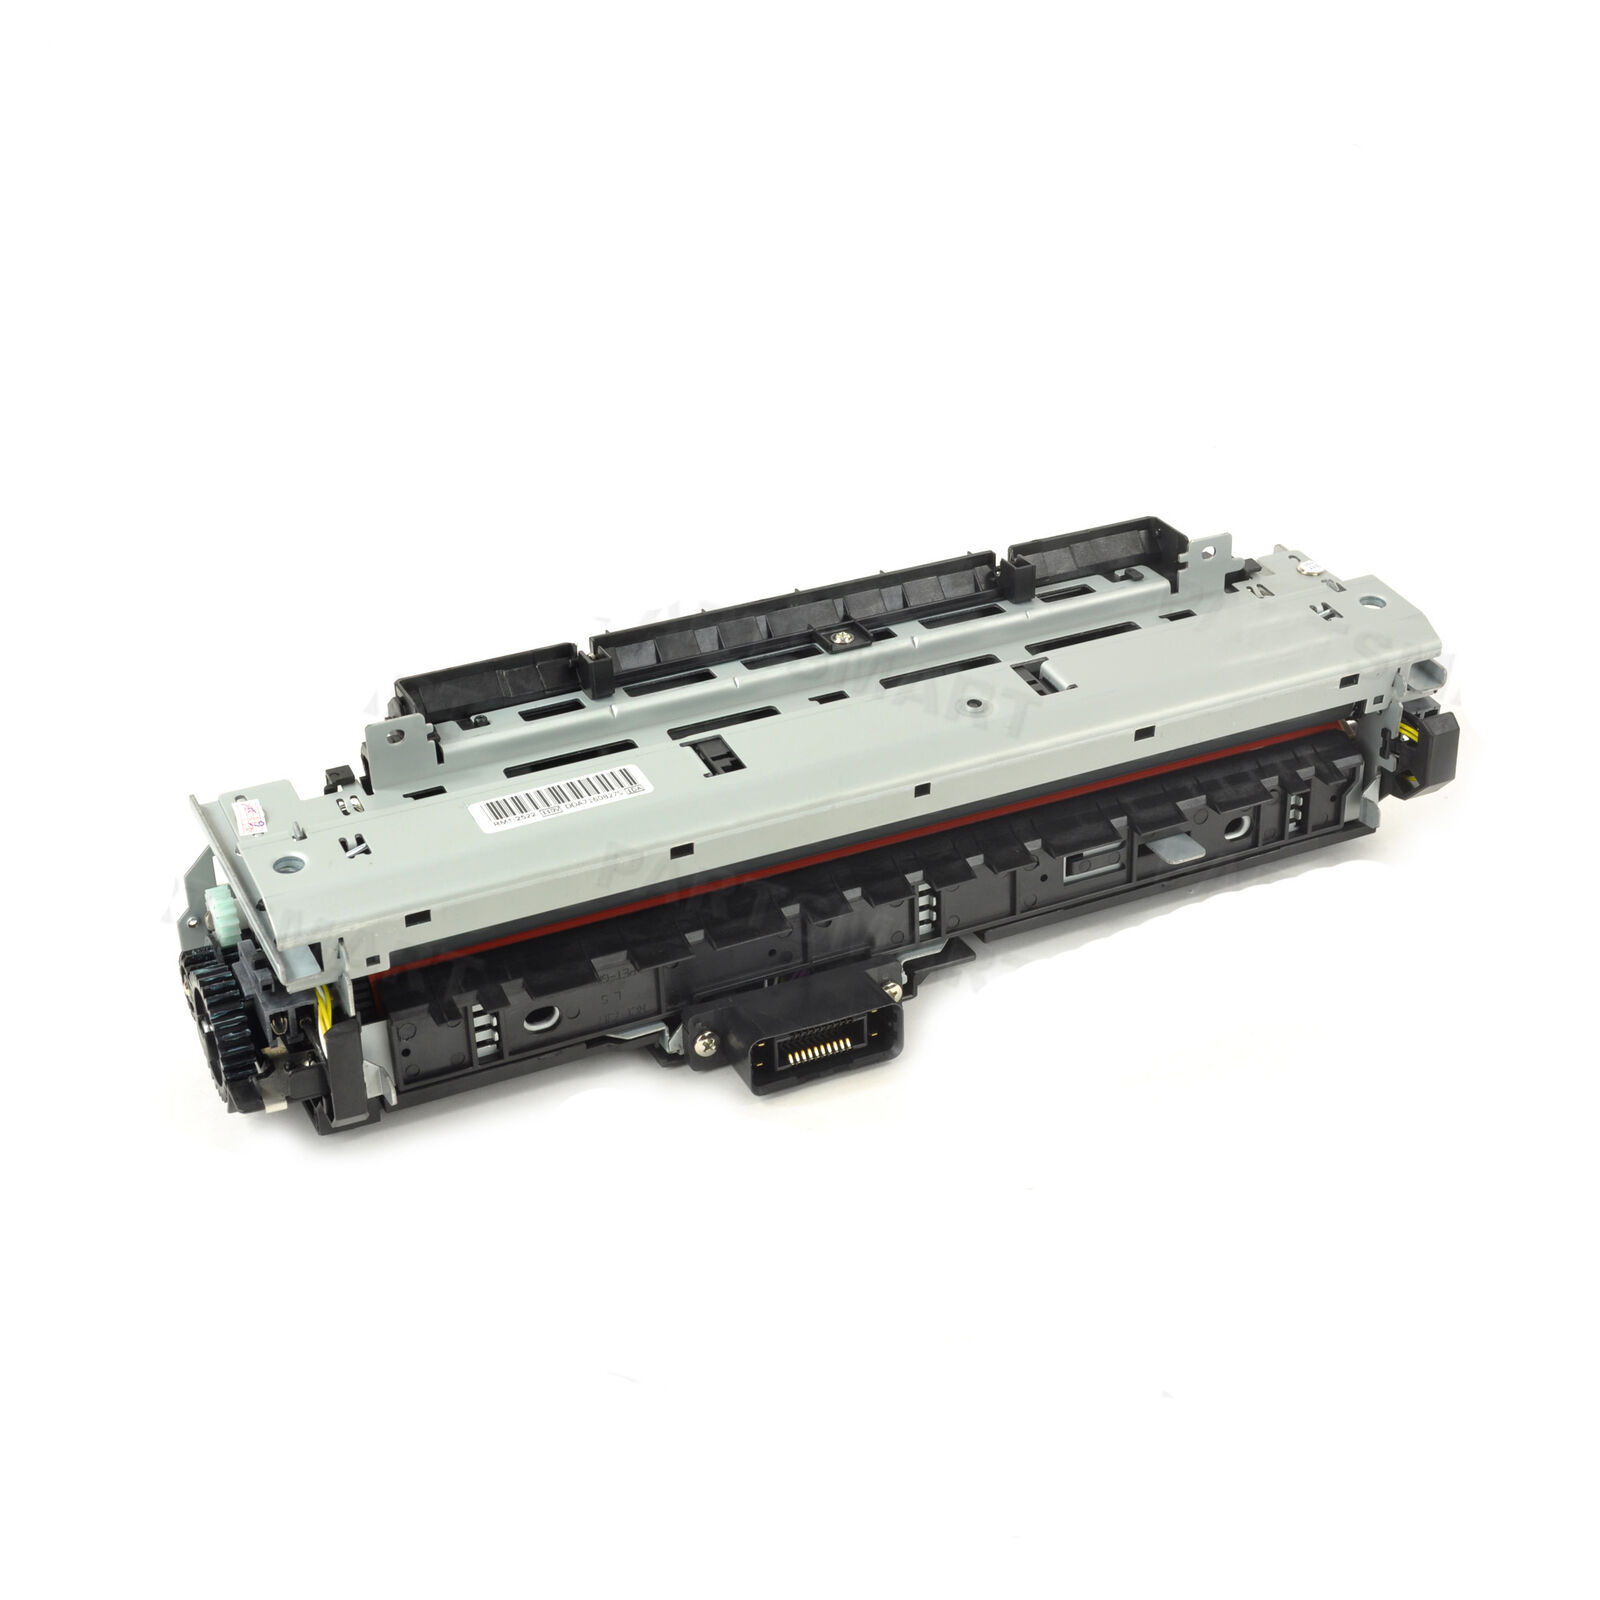 Printel New Compatible RM1-2522-000 Fuser Assembly (110V) for HP LaserJet 5200